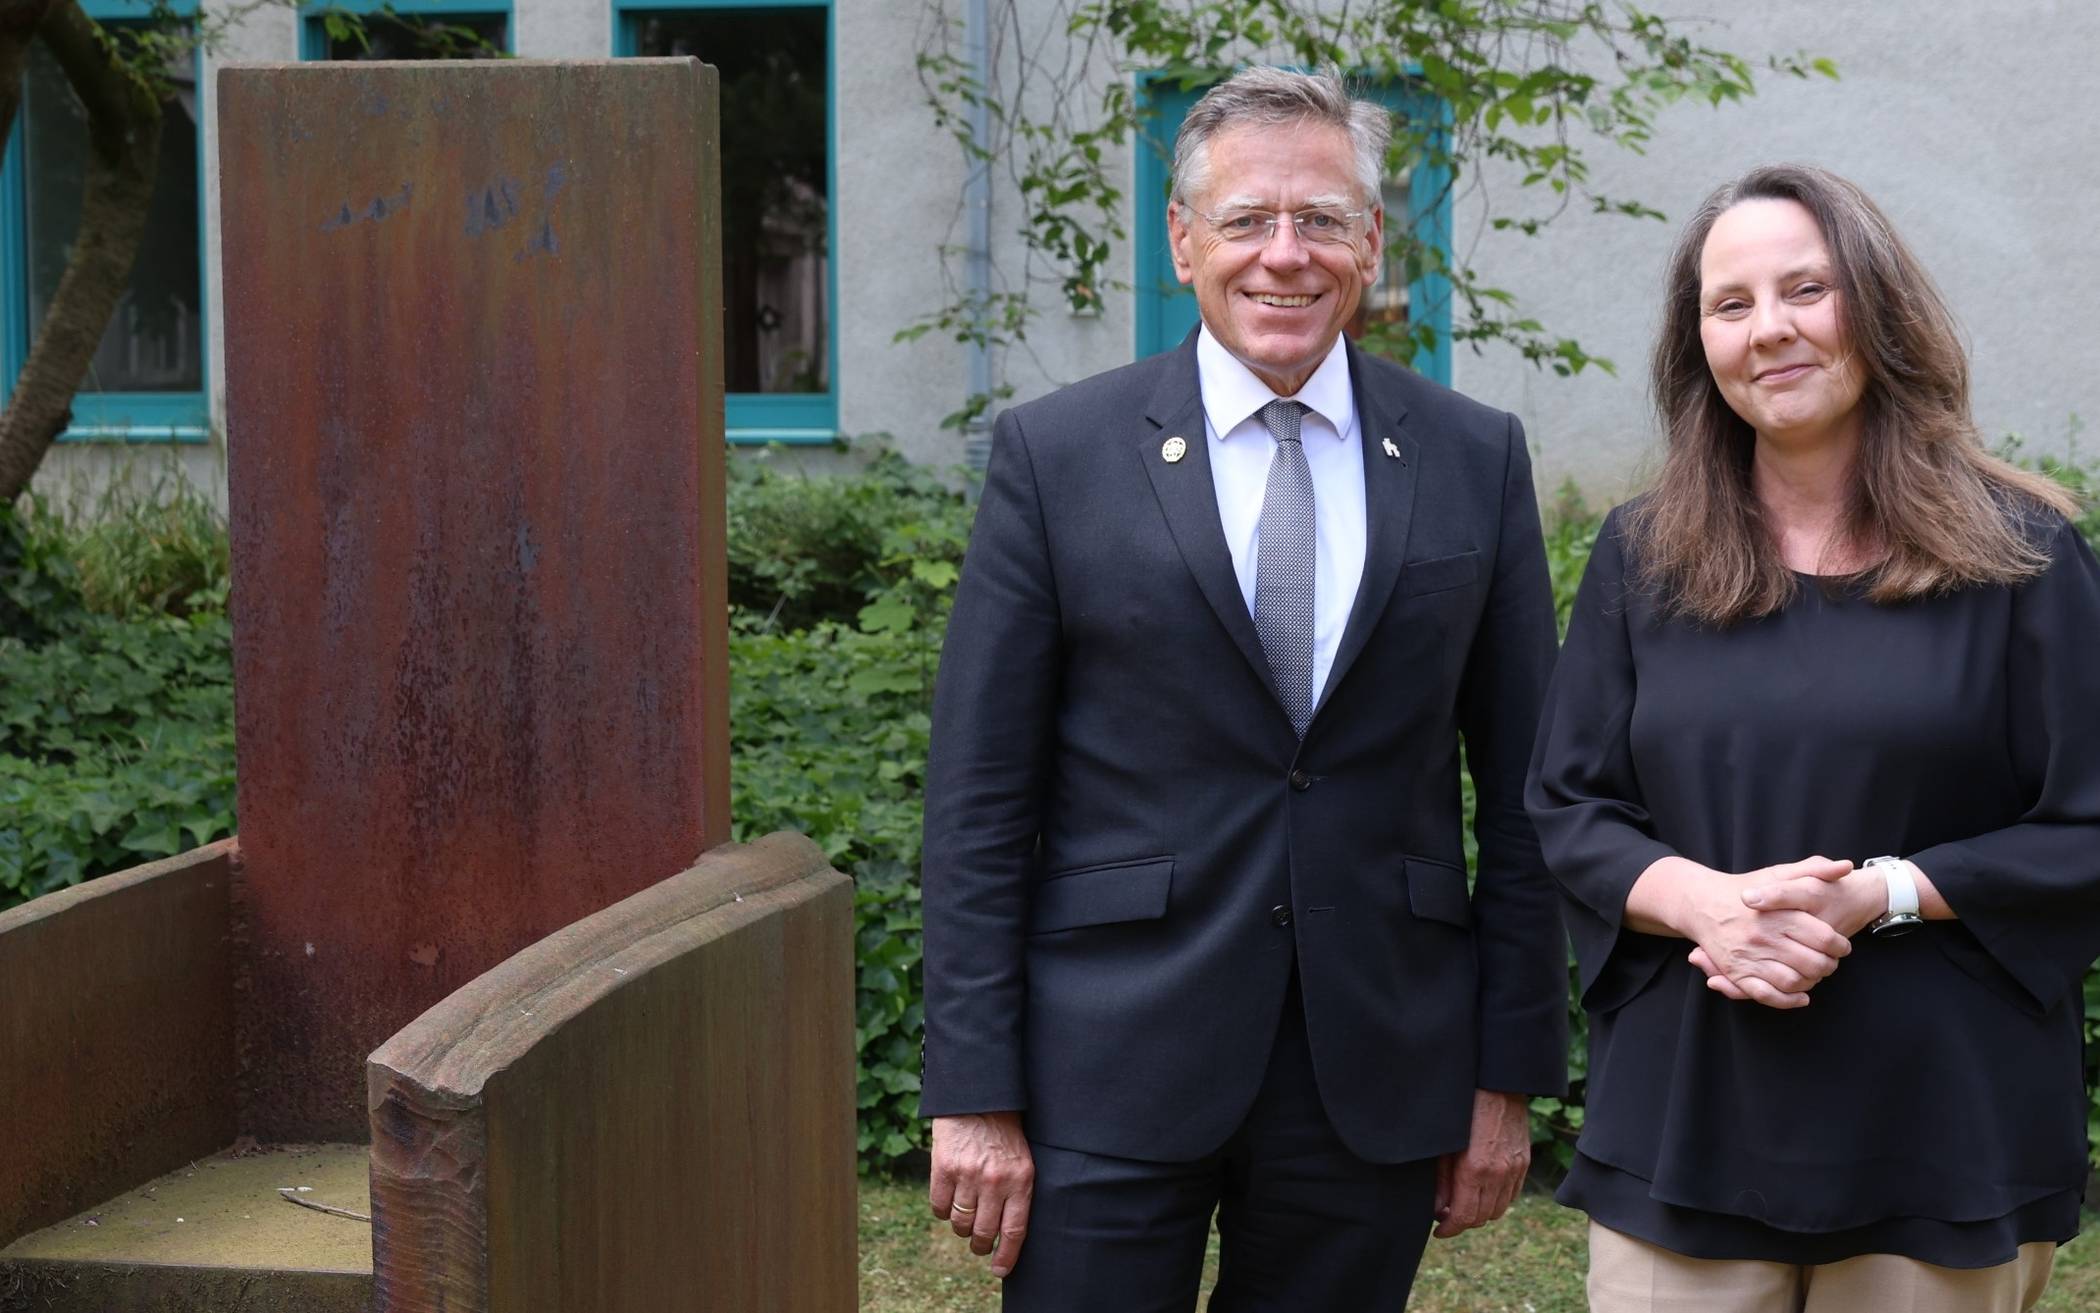  Landrat Hans-Jürgen Petrauschke hat die neue Leitende Oberstaatsanwältin der Staatsanwaltschaft Düsseldorf, Dr. Christina Wehner, zu deren Antrittsbesuch in Grevenbroich empfangen. 